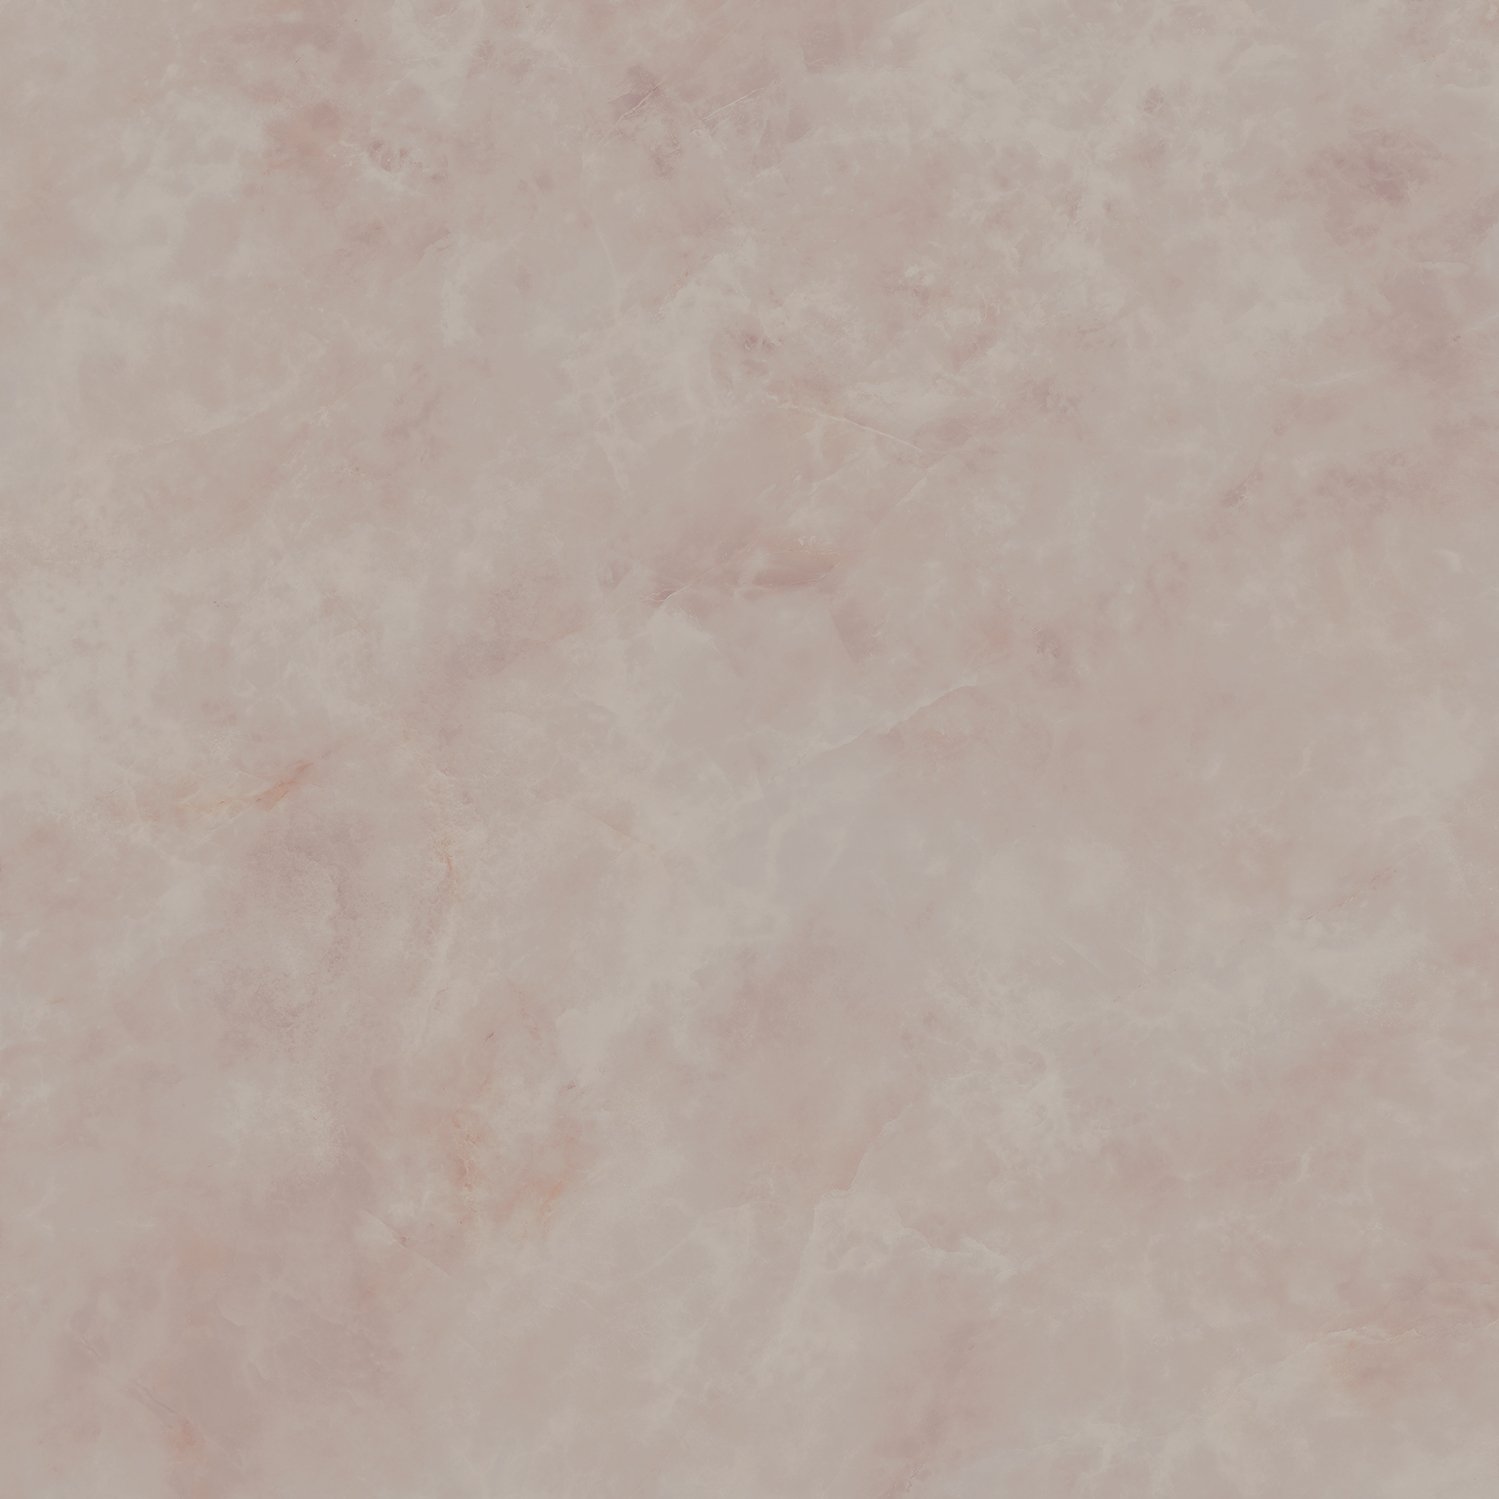 SG016002R Ониче розовый лаппатированный обрезной 119,5x119,5x1,1 Kerama Marazzi